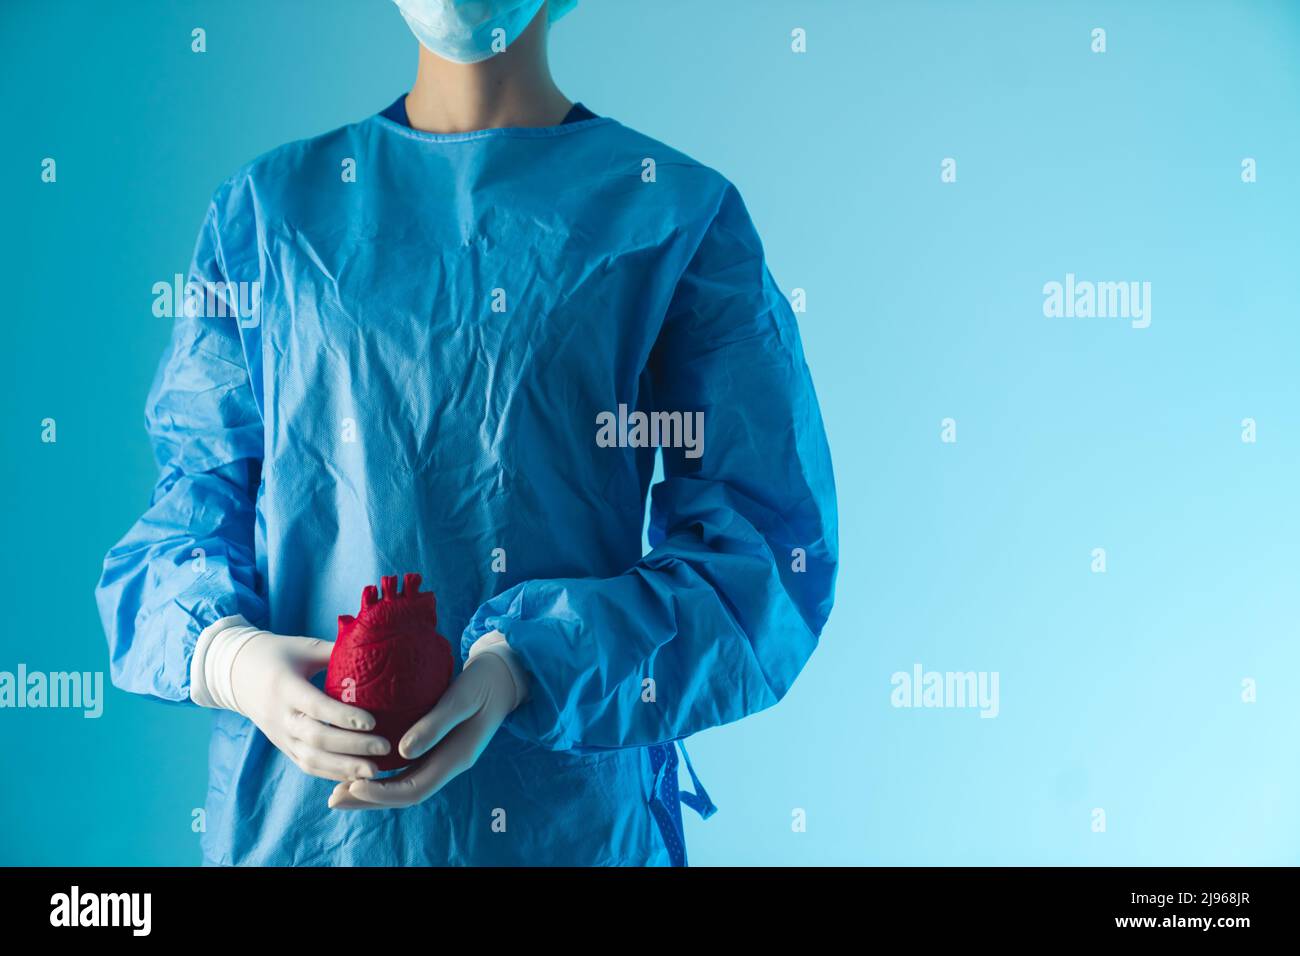 Medico mascherato e irriconoscibile che indossa scrub chirurgici e guanti che tengono un falso cuore rosso umano. Sfondo blu. Concetto medico. Foto di alta qualità Foto Stock